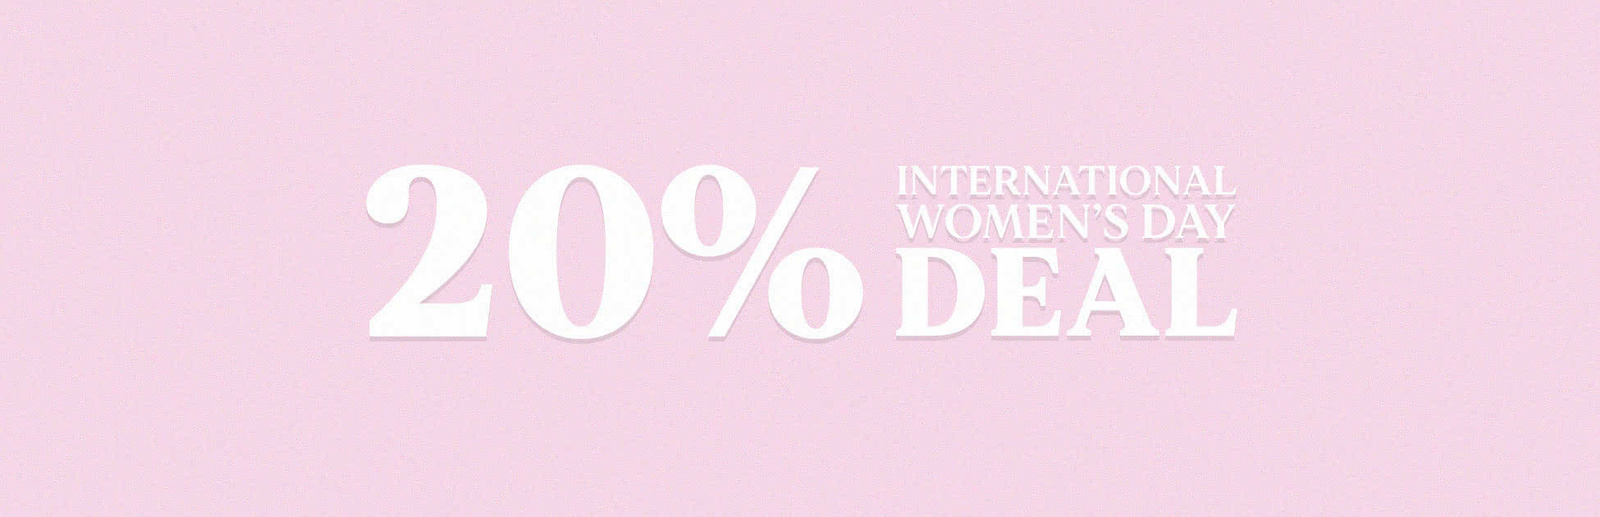 International Womens Day Deal